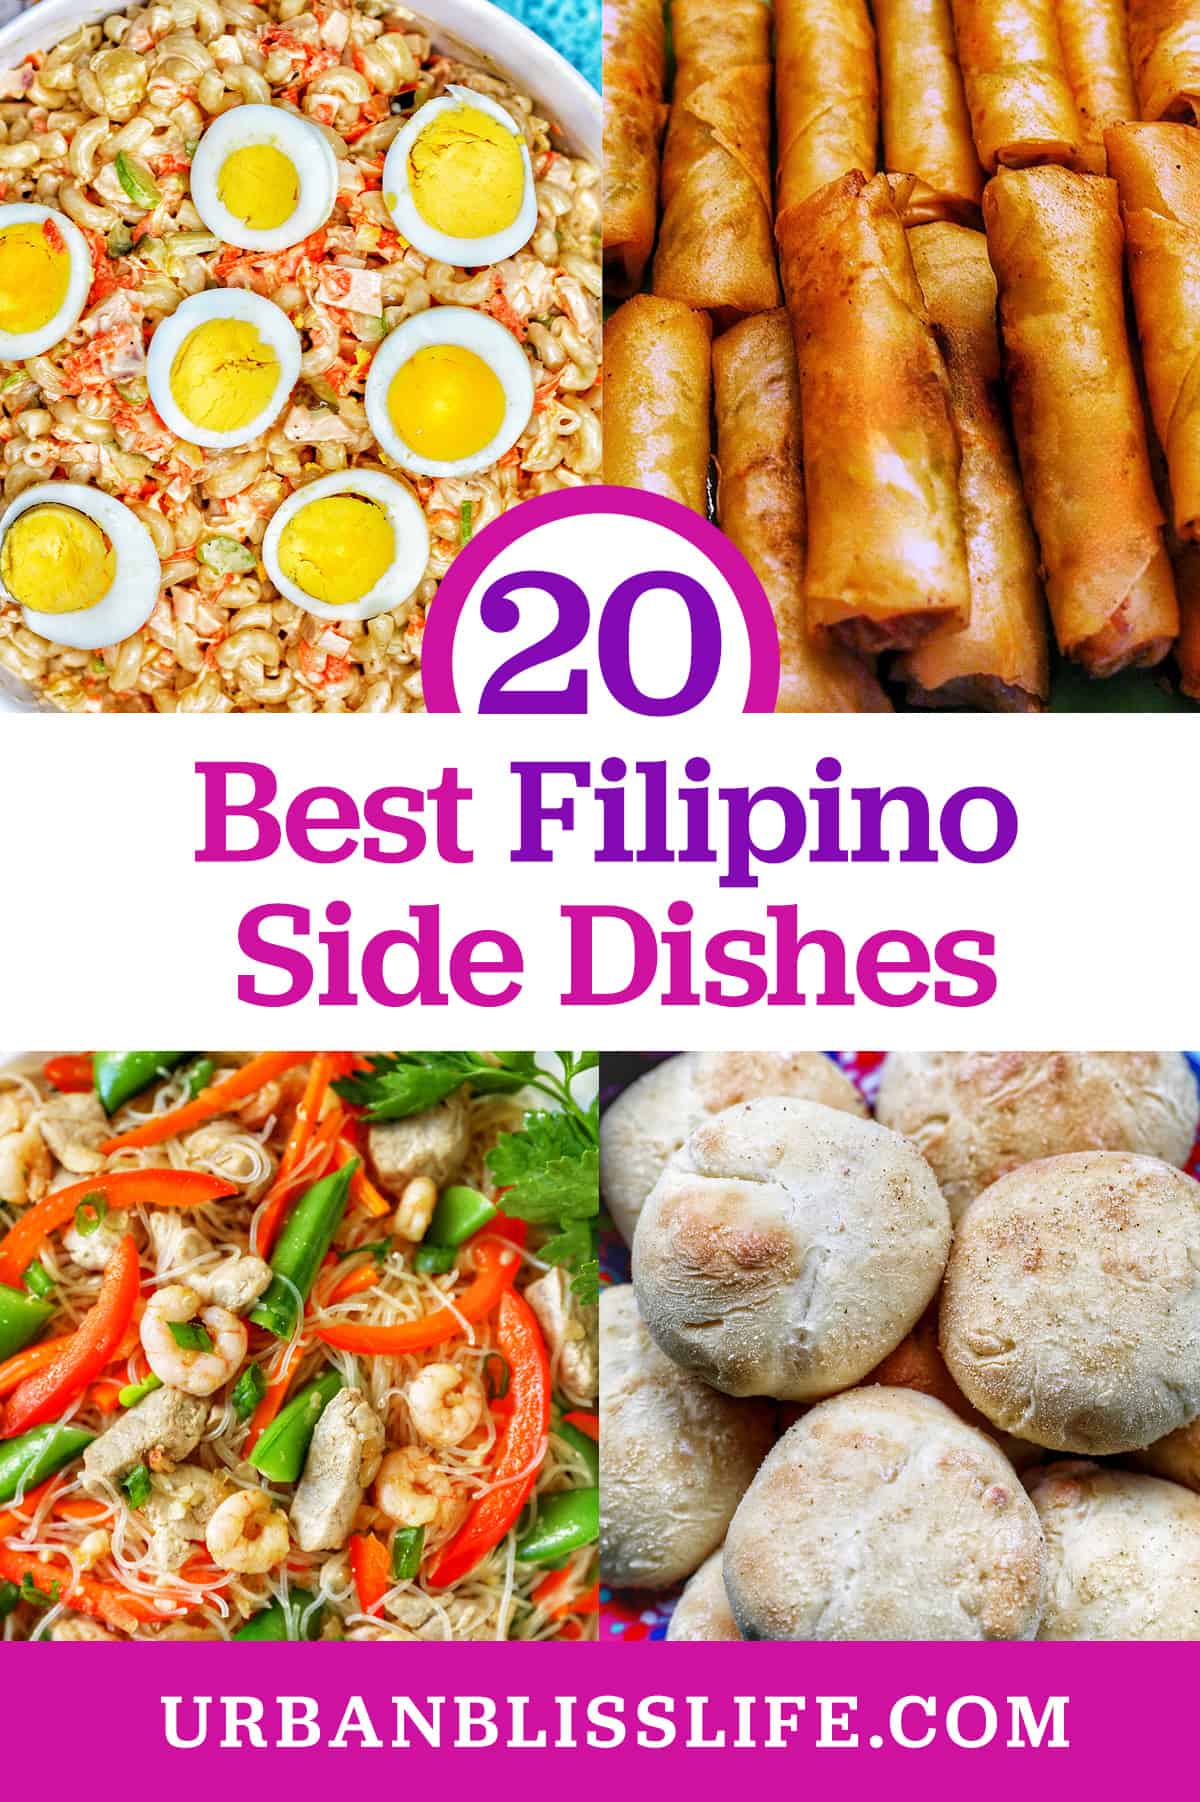 Filipino macaroni salad, lumpia, pancit bihon, and pan de sal with title text "20 Best Filipino Side Dishes."